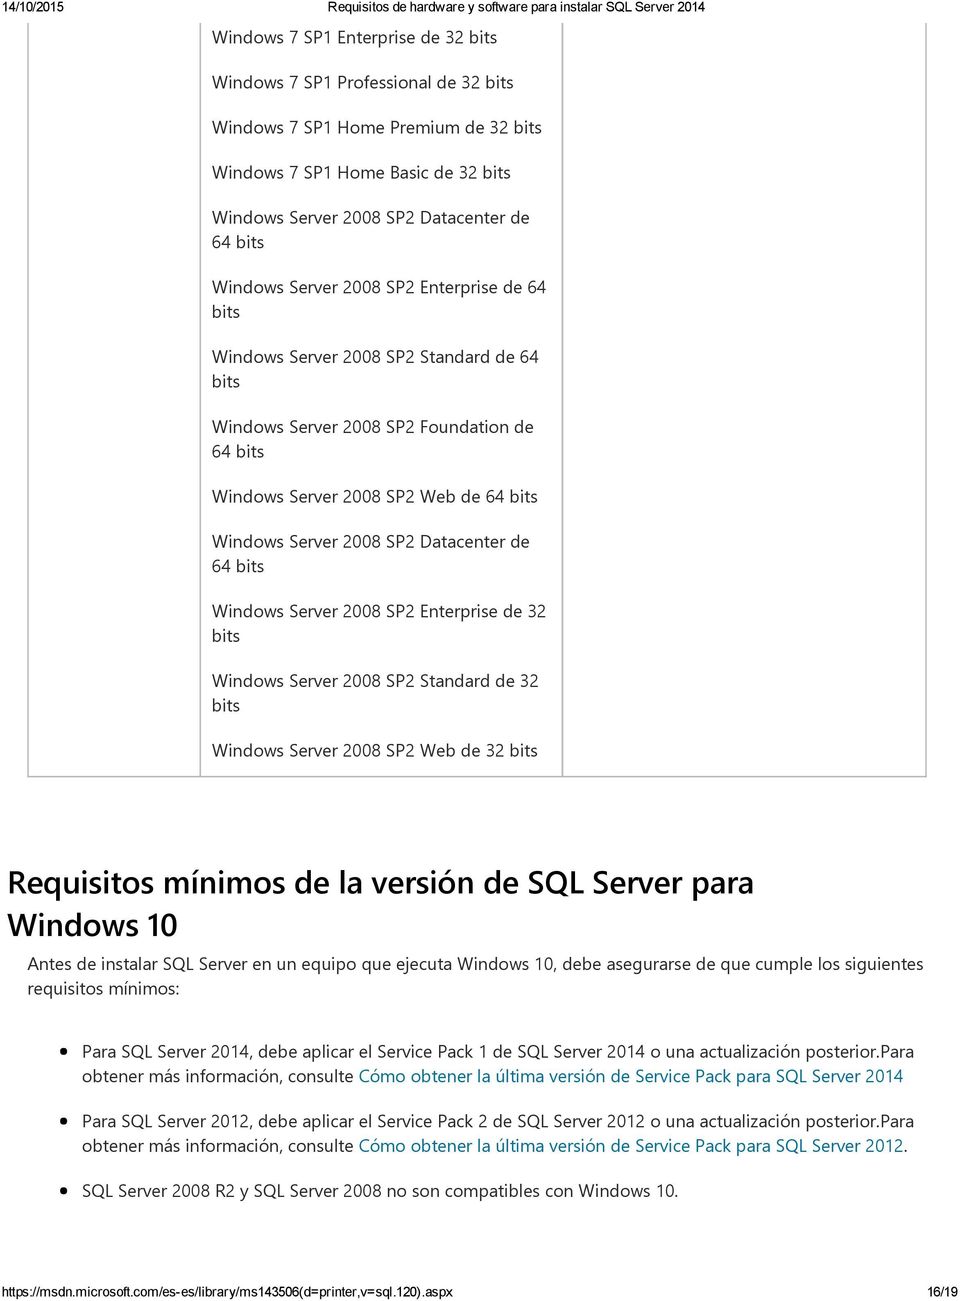 Enterprise de 32 Windows Server 2008 SP2 Standard de 32 Windows Server 2008 SP2 Web de 32 Requisitos mínimos de la versión de SQL Server para Windows 10 Antes de instalar SQL Server en un equipo que